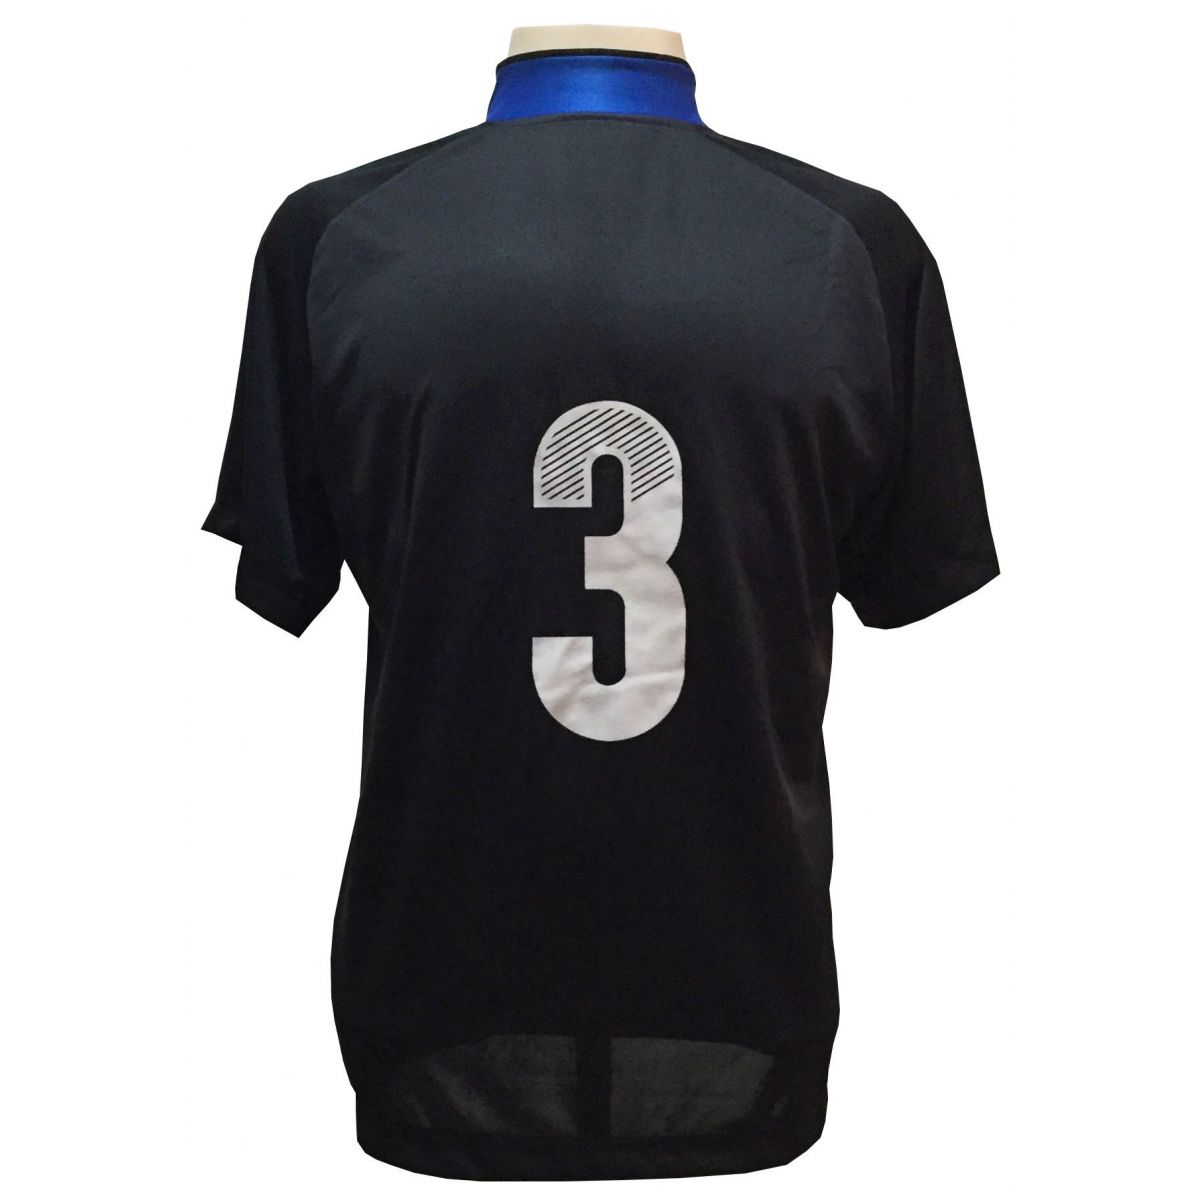 Uniforme Esportivo com 20 camisas modelo Milan Preto/Royal + 20 calções modelo Madrid Preto + Brindes